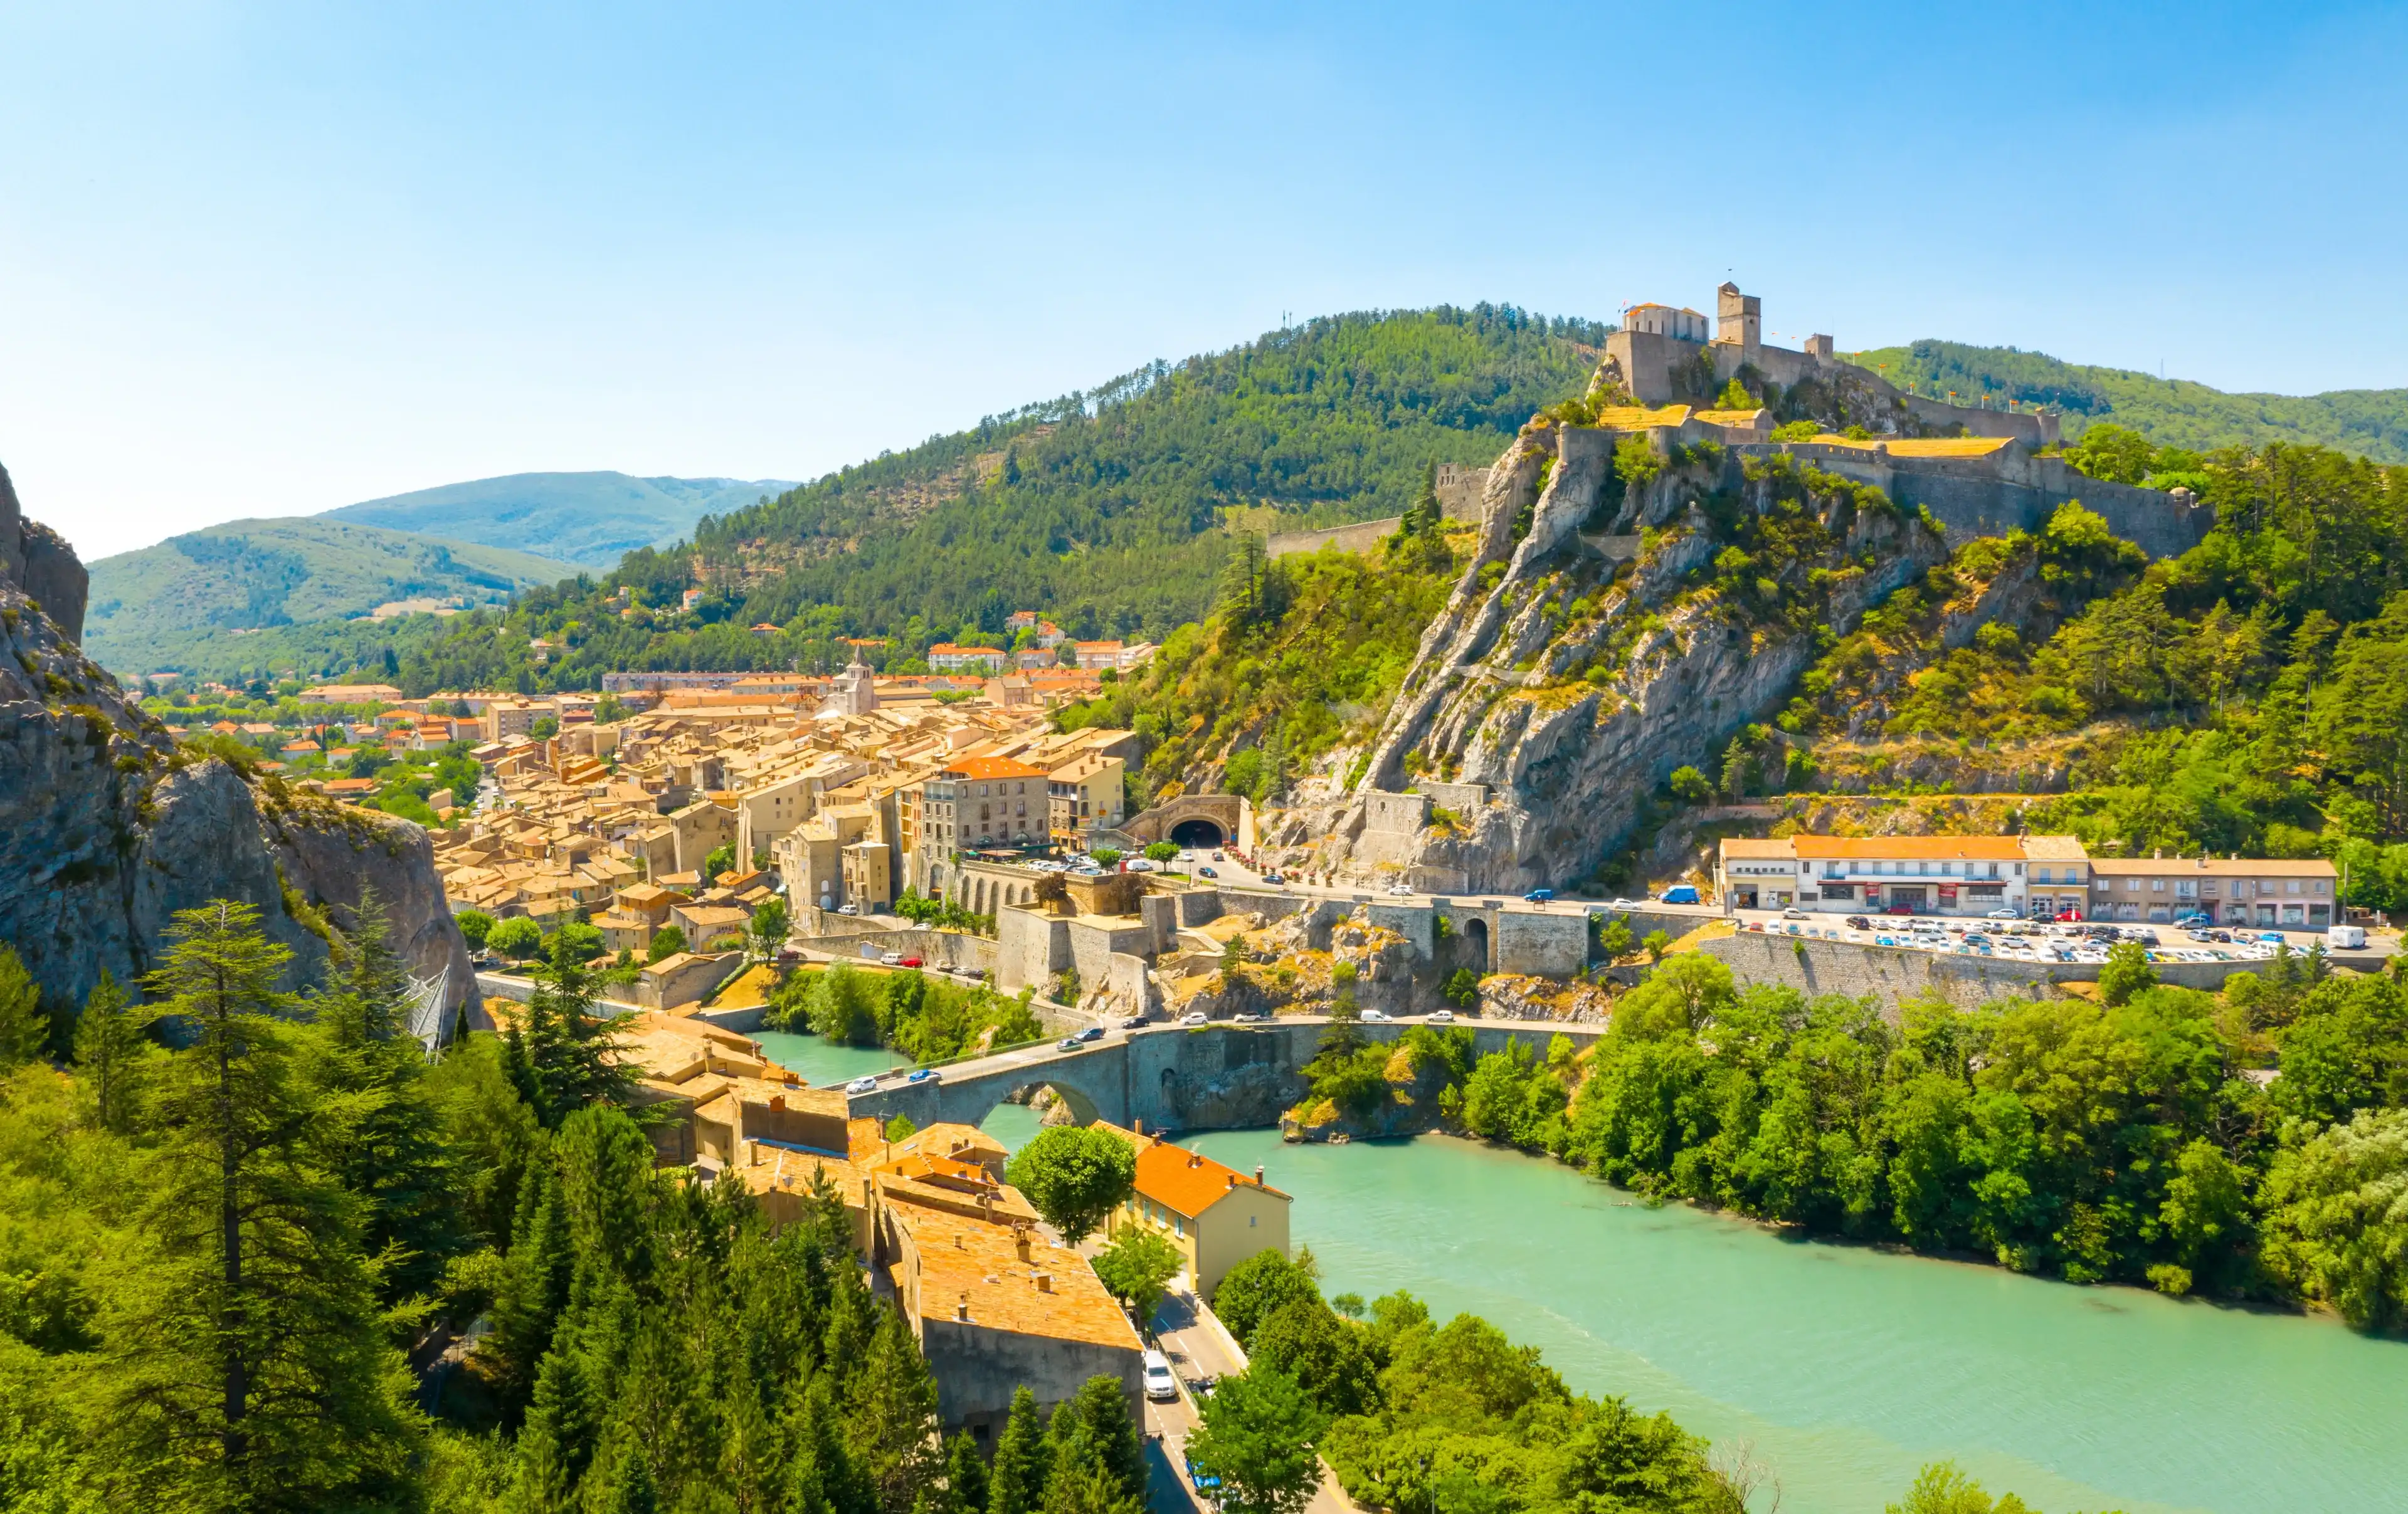 Provence-Alpes-Côte d'Azur hotels. Best hotels in Provence-Alpes-Côte d'Azur, France